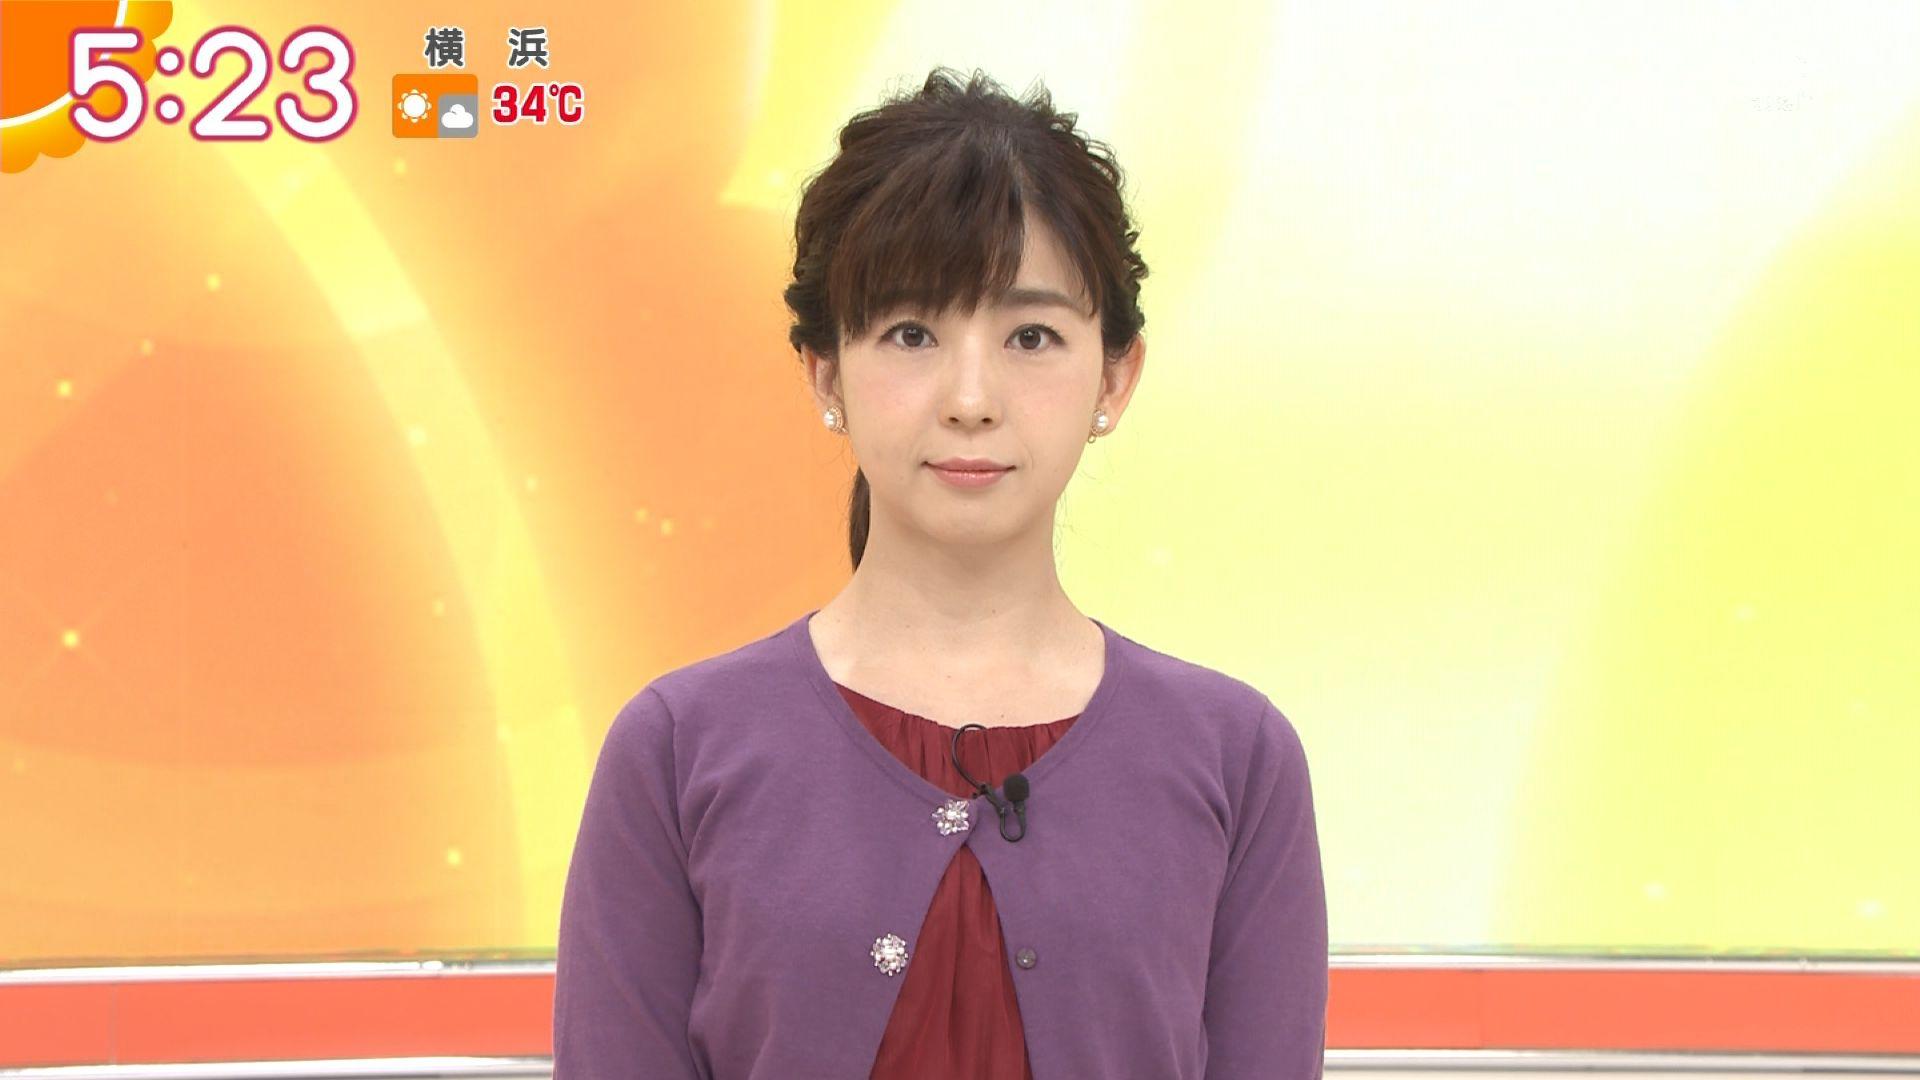 テレビ朝日 松尾由美子アナは結婚してる 身長 体重等プロフィールも 太郎の女子アナ日記